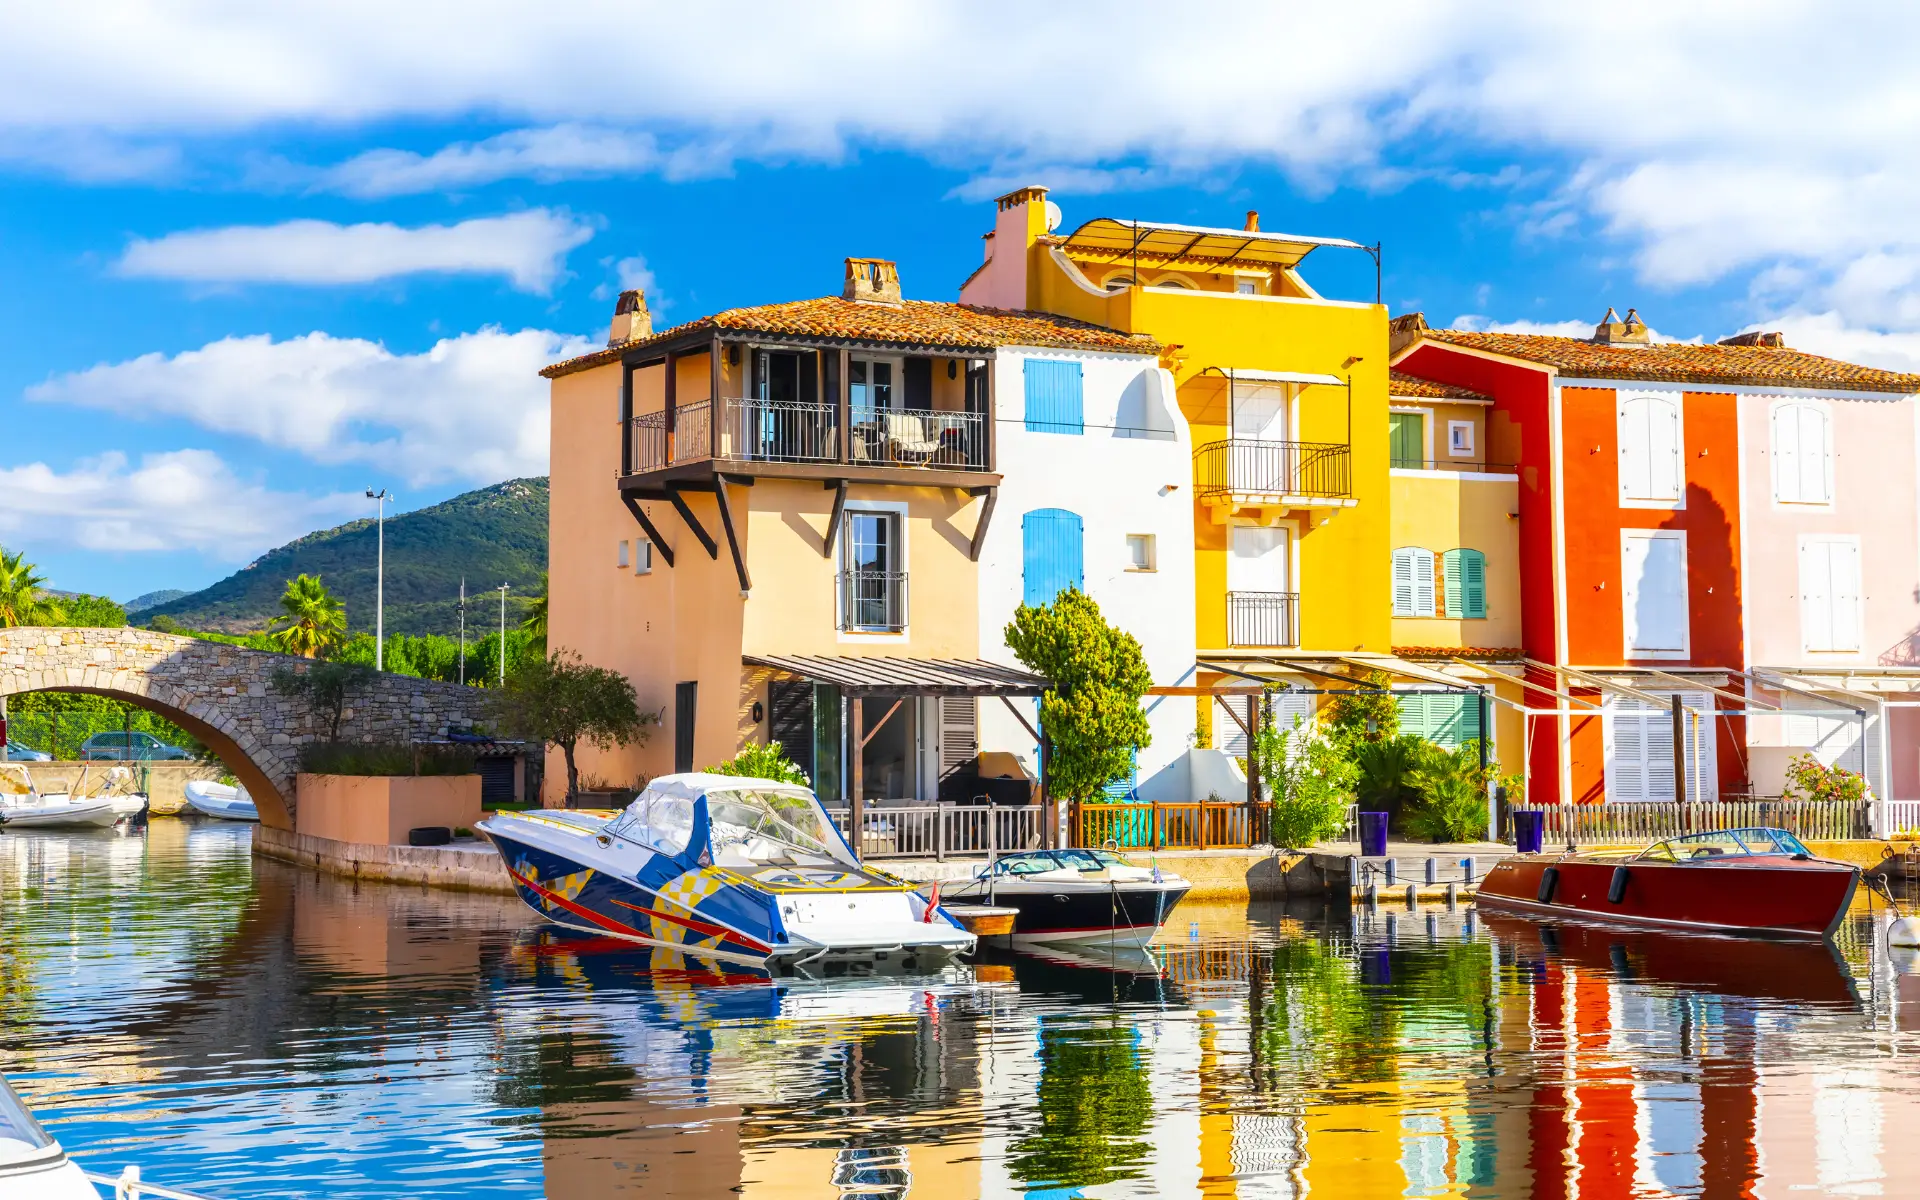 Grimaud maisons bateaux colores